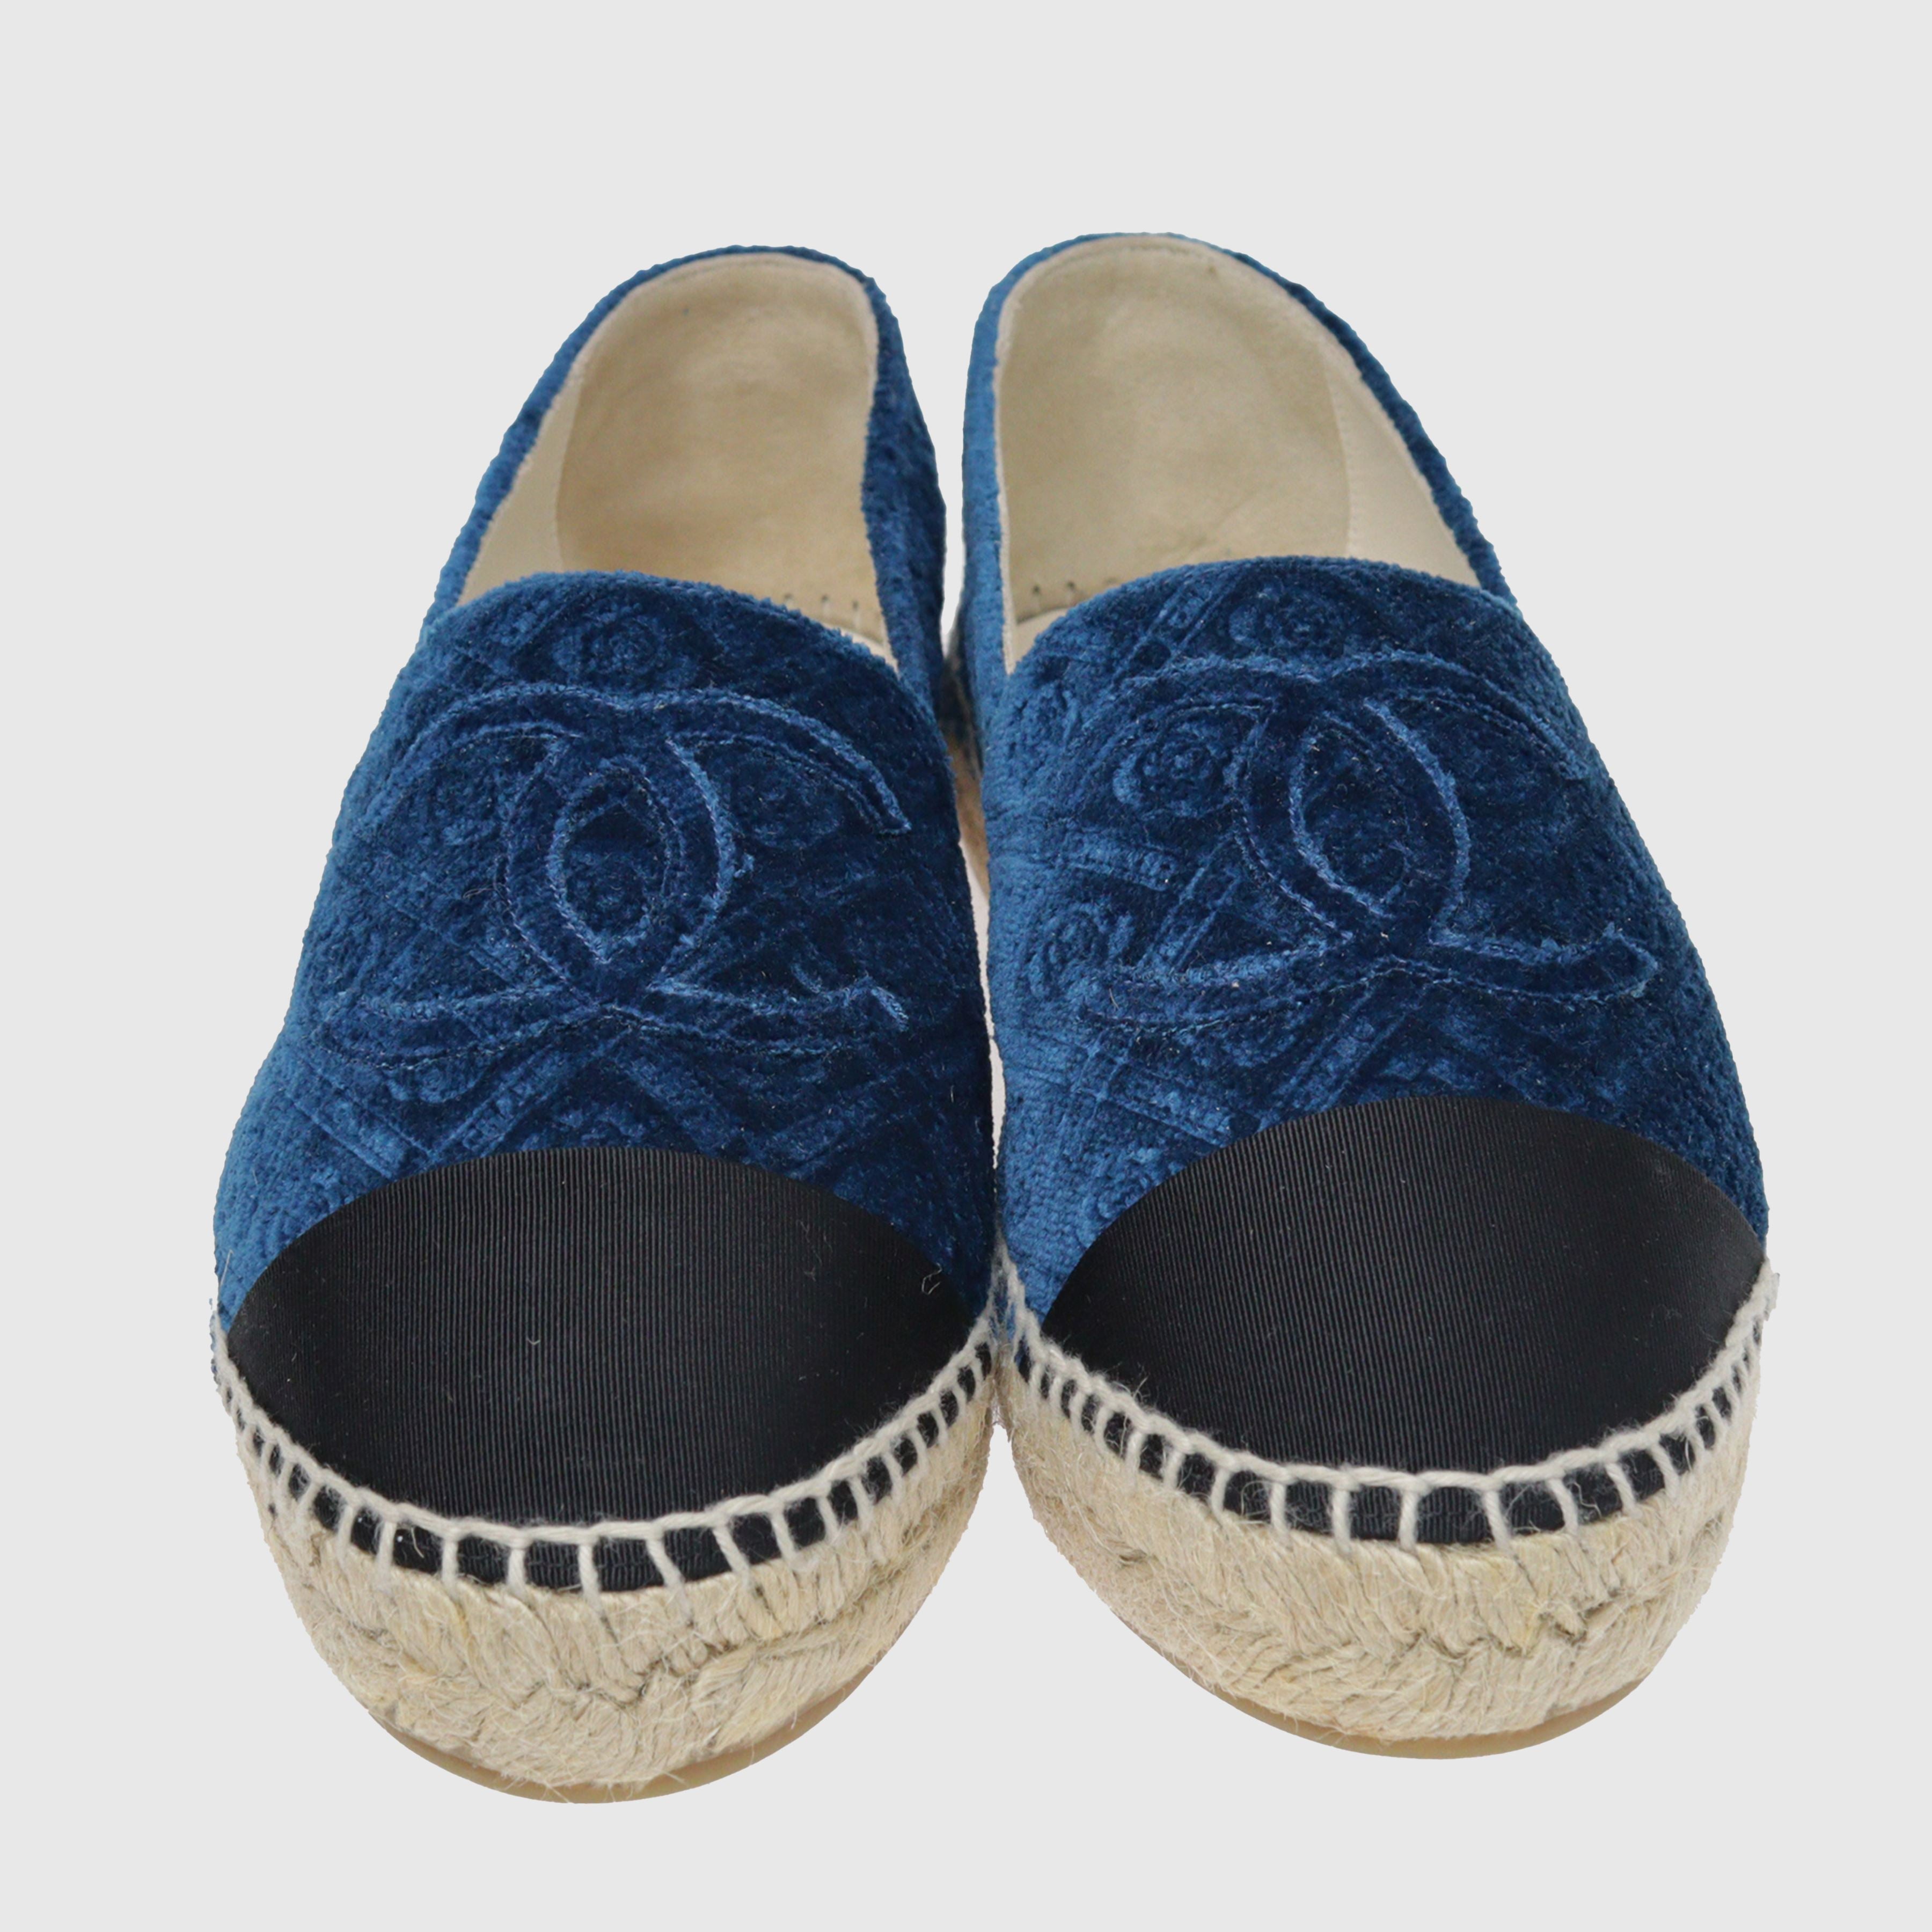 Blue CC Camelia Espadrilles Shoes Chanel 